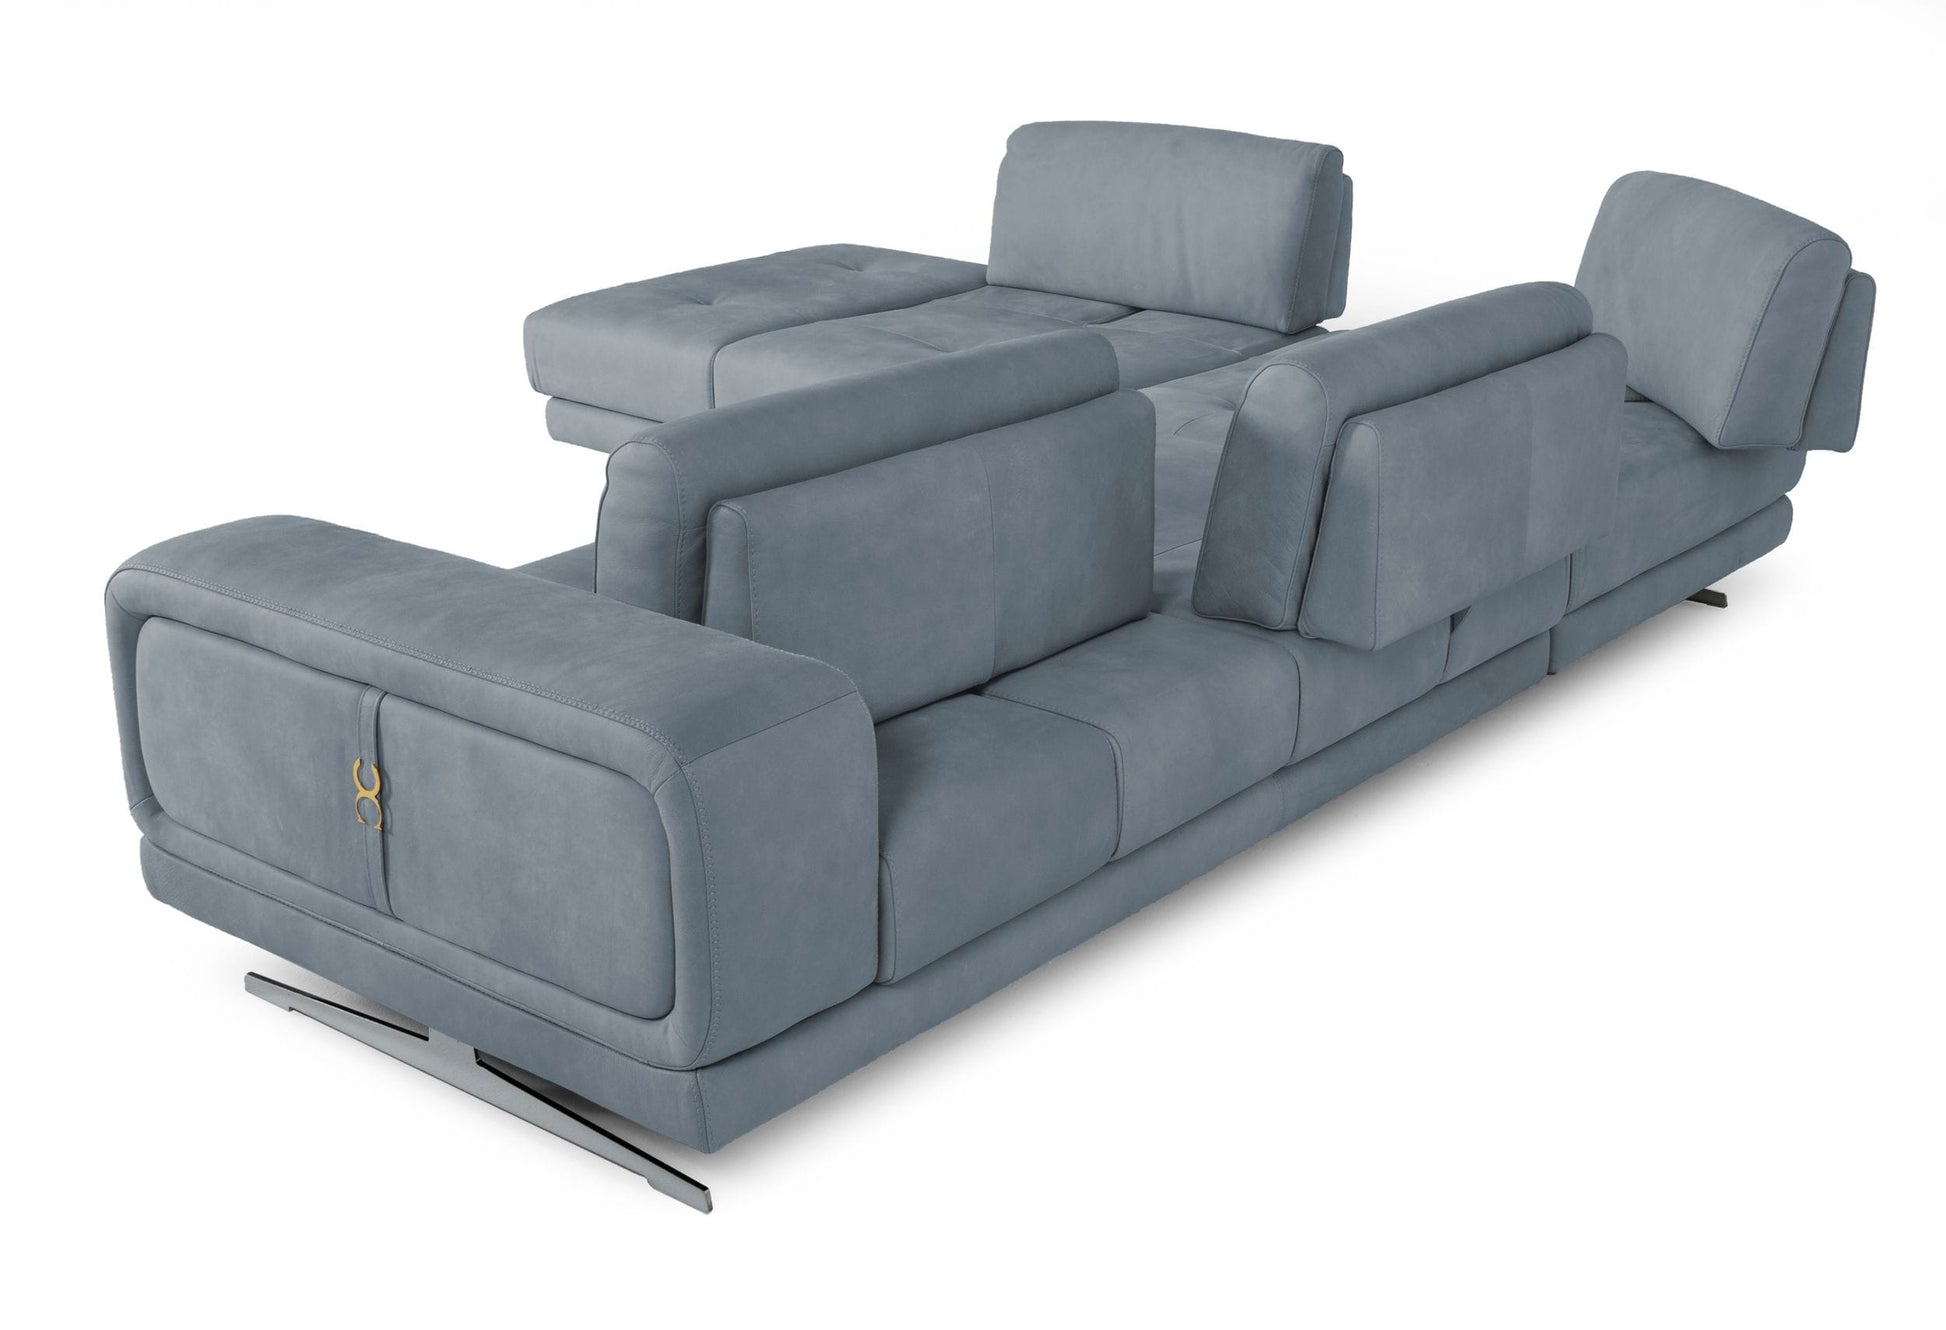 Coronelli Collezioni Mood - Contemporary Blue LAF Chaise Sectional Sofa-4